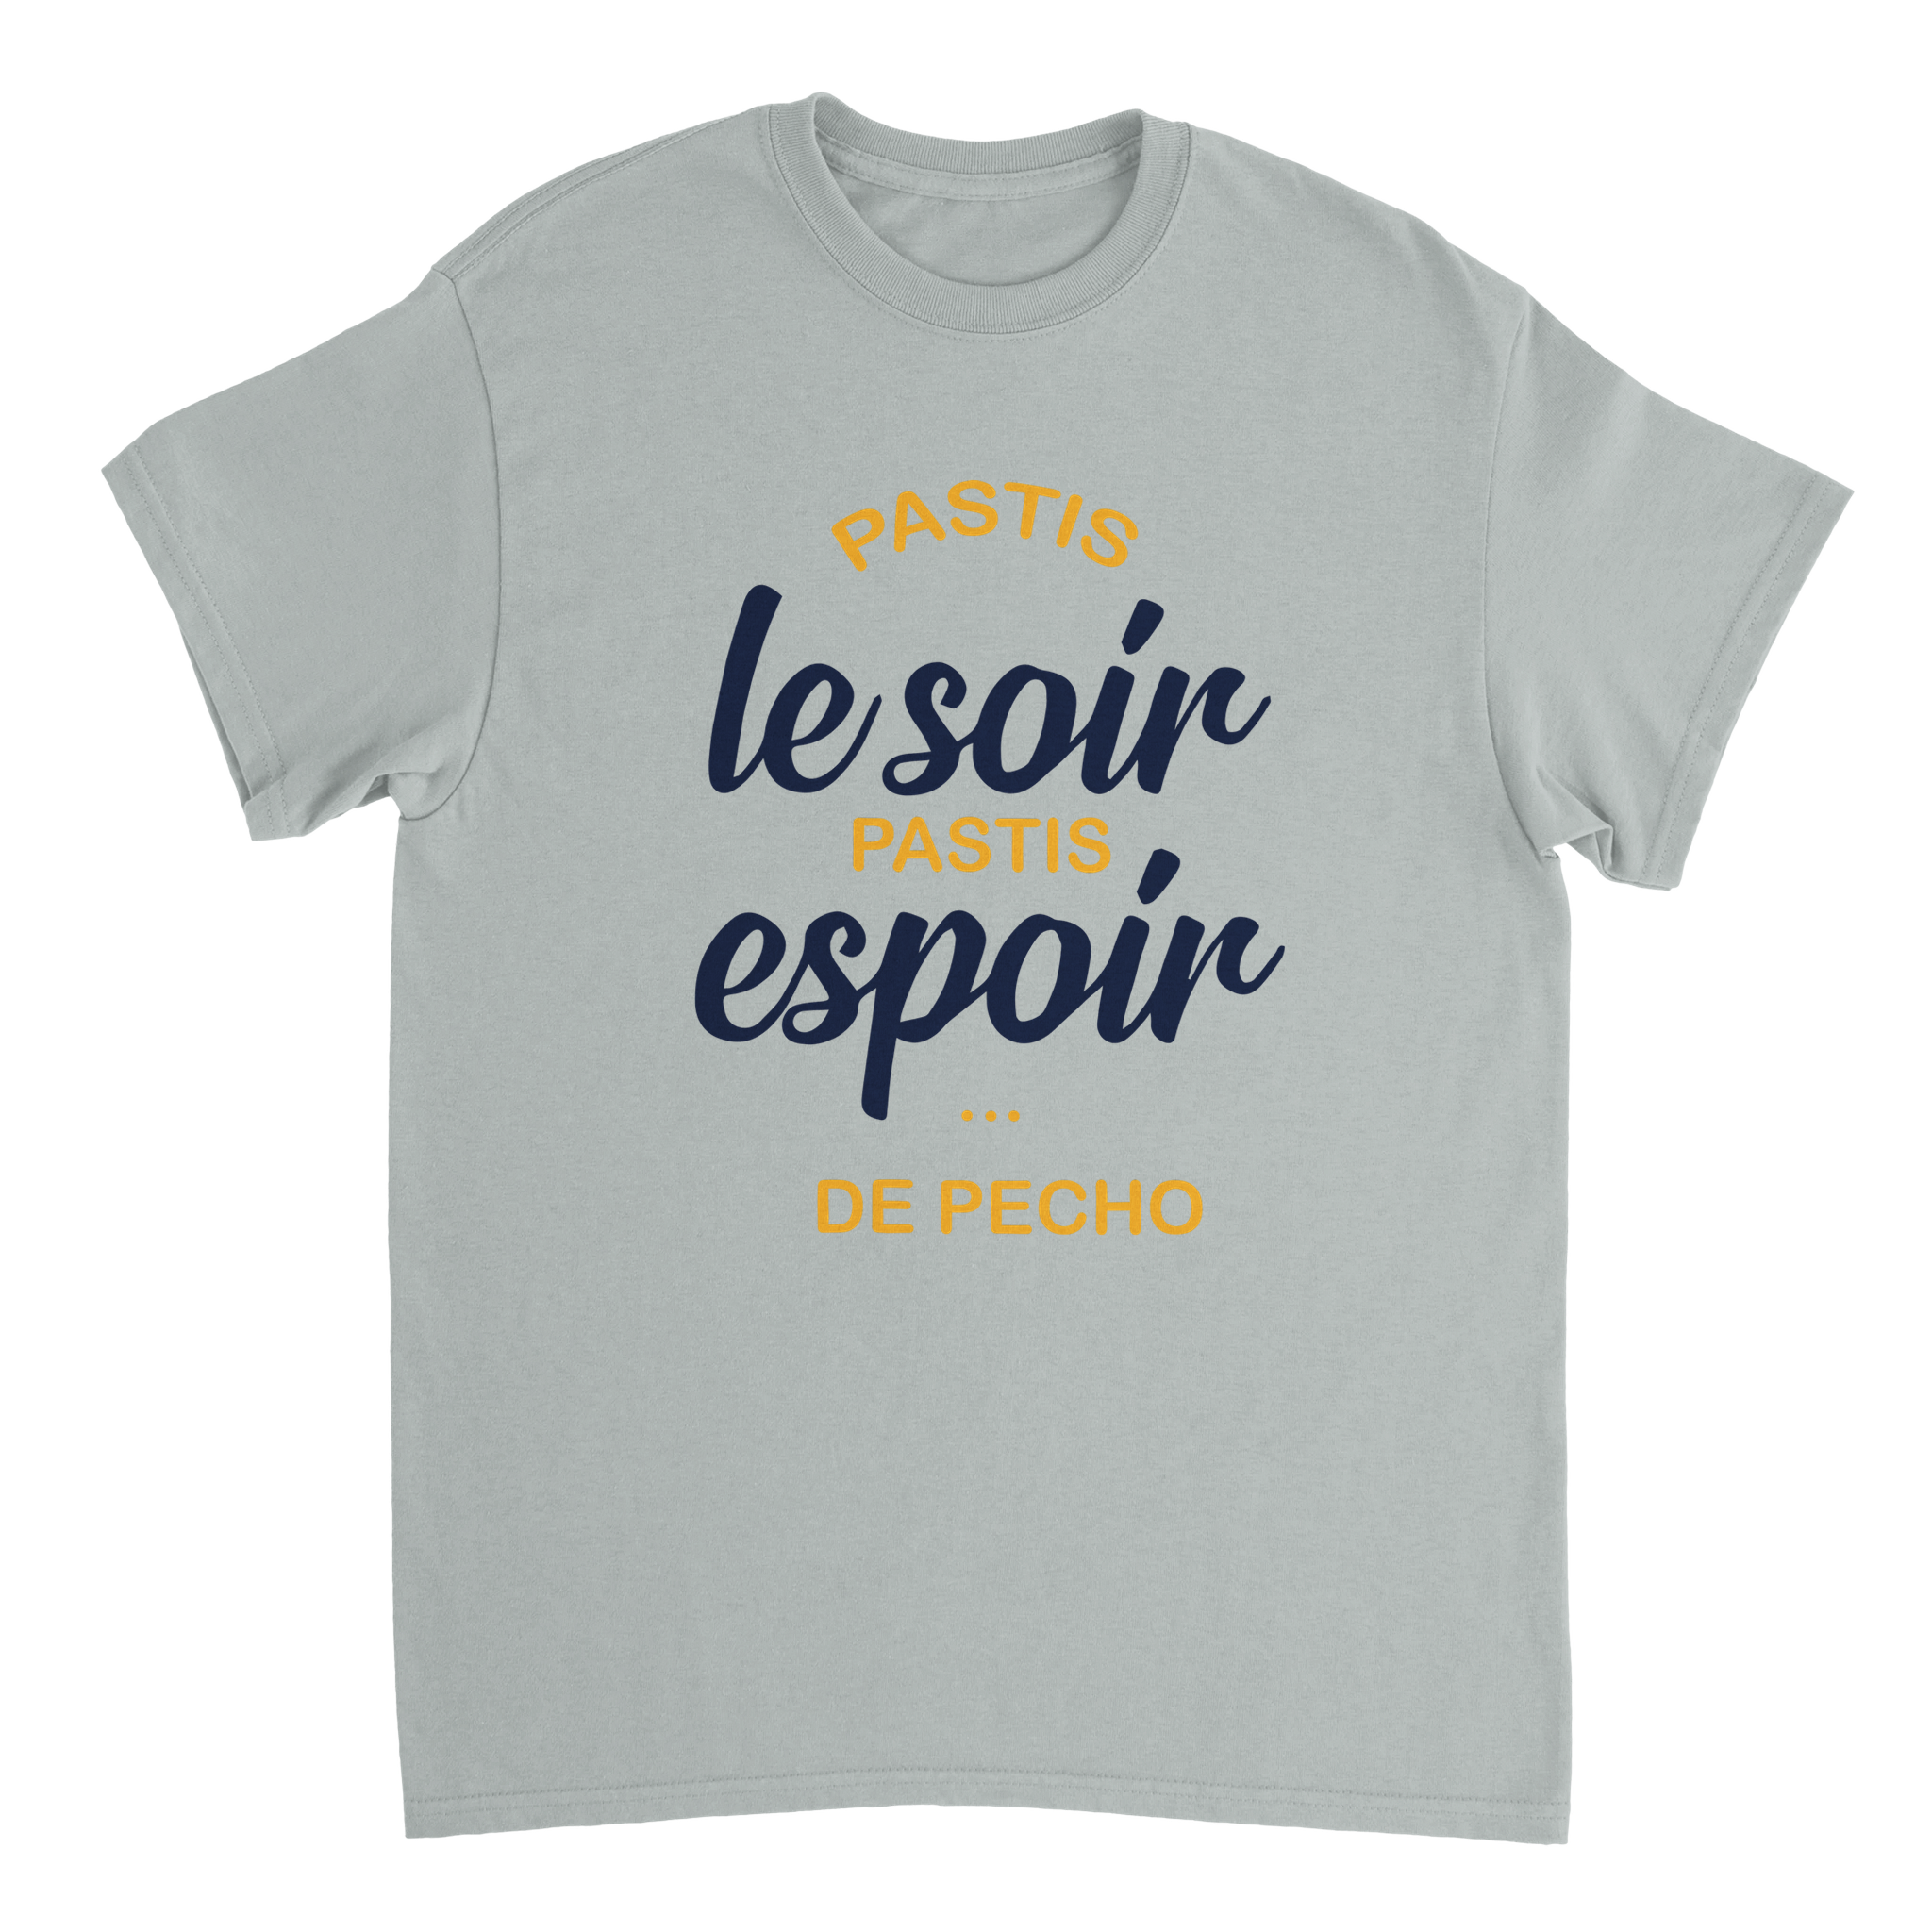 T-shirt Pastis "Pastis le soir pastis espoir de pécho" | Mixte